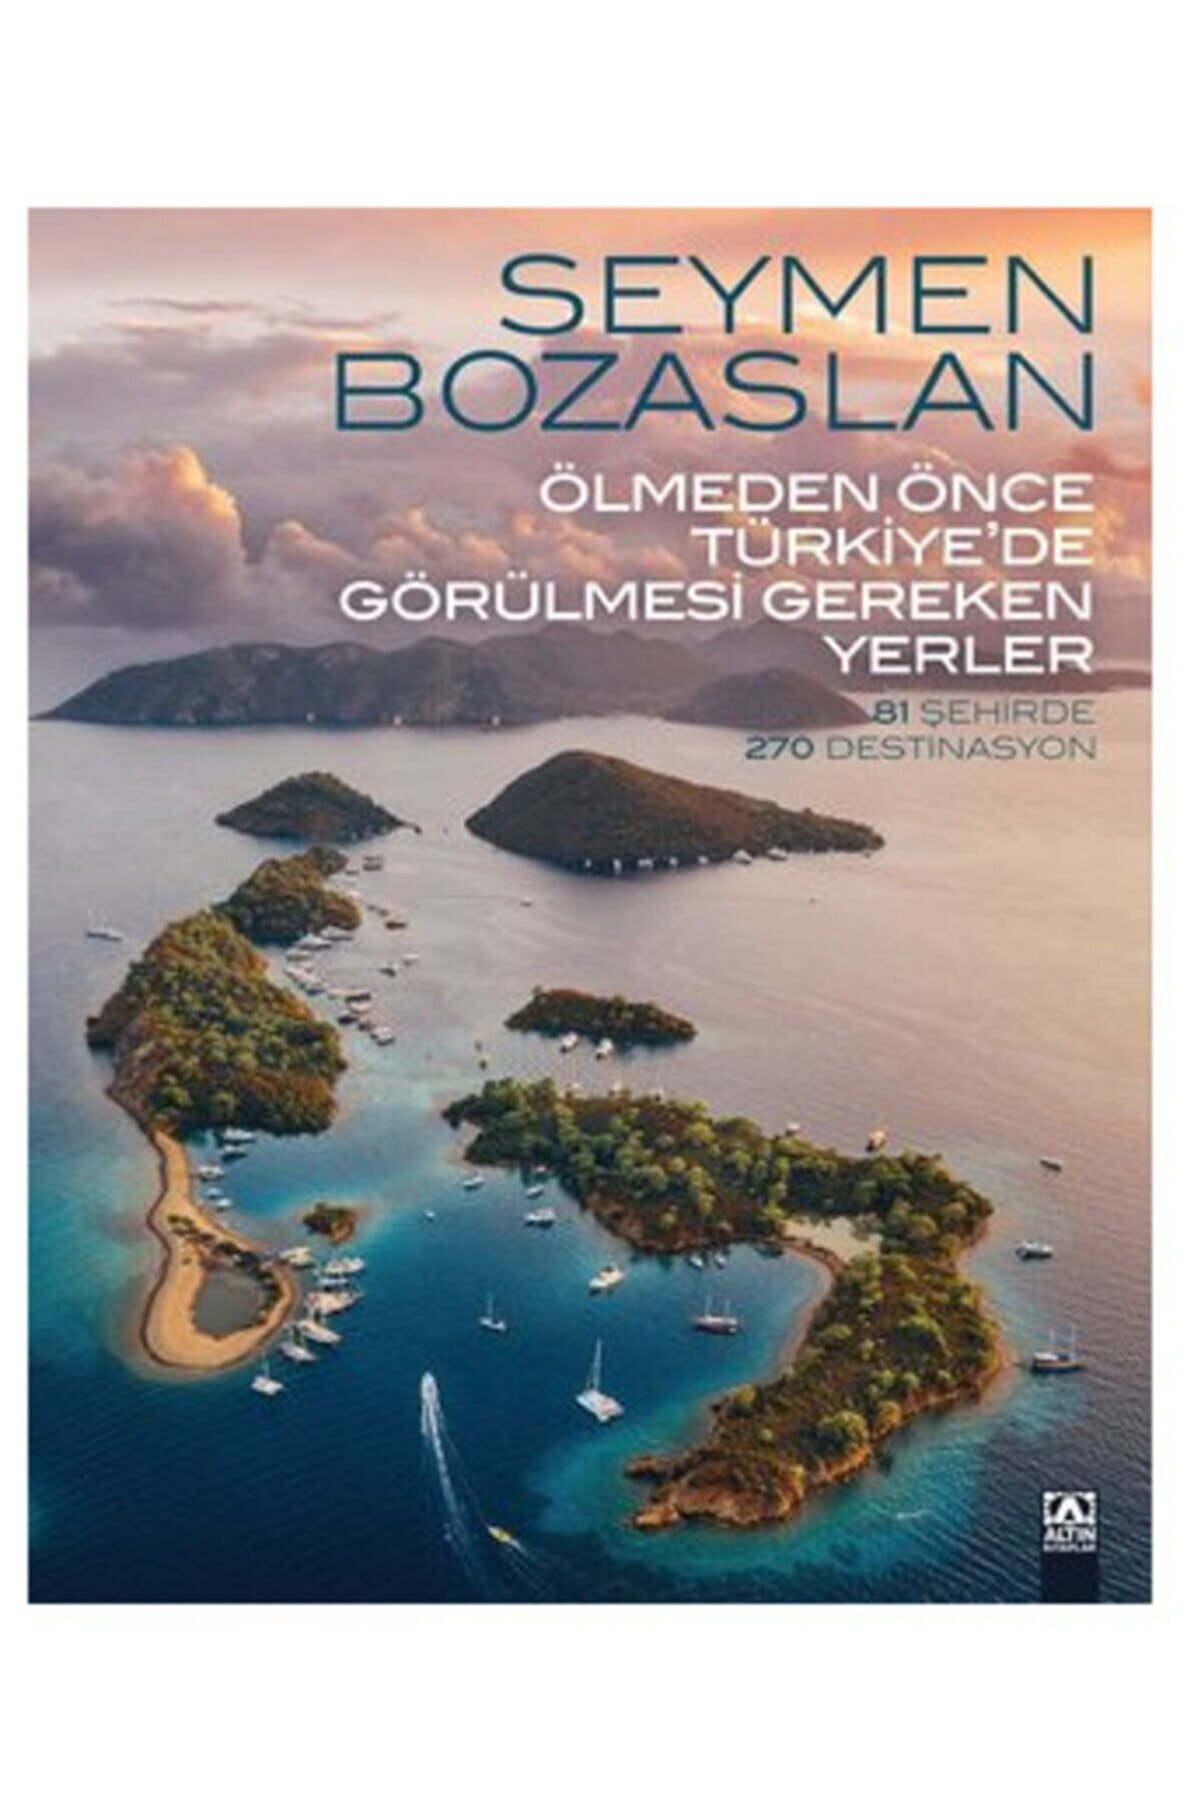 Altın Kitaplar Ölmeden Önce Türkiye'de Görülmesi Gereken Yerler - 81 Şehirde 270 Destinasyon Seymen Bozaslan